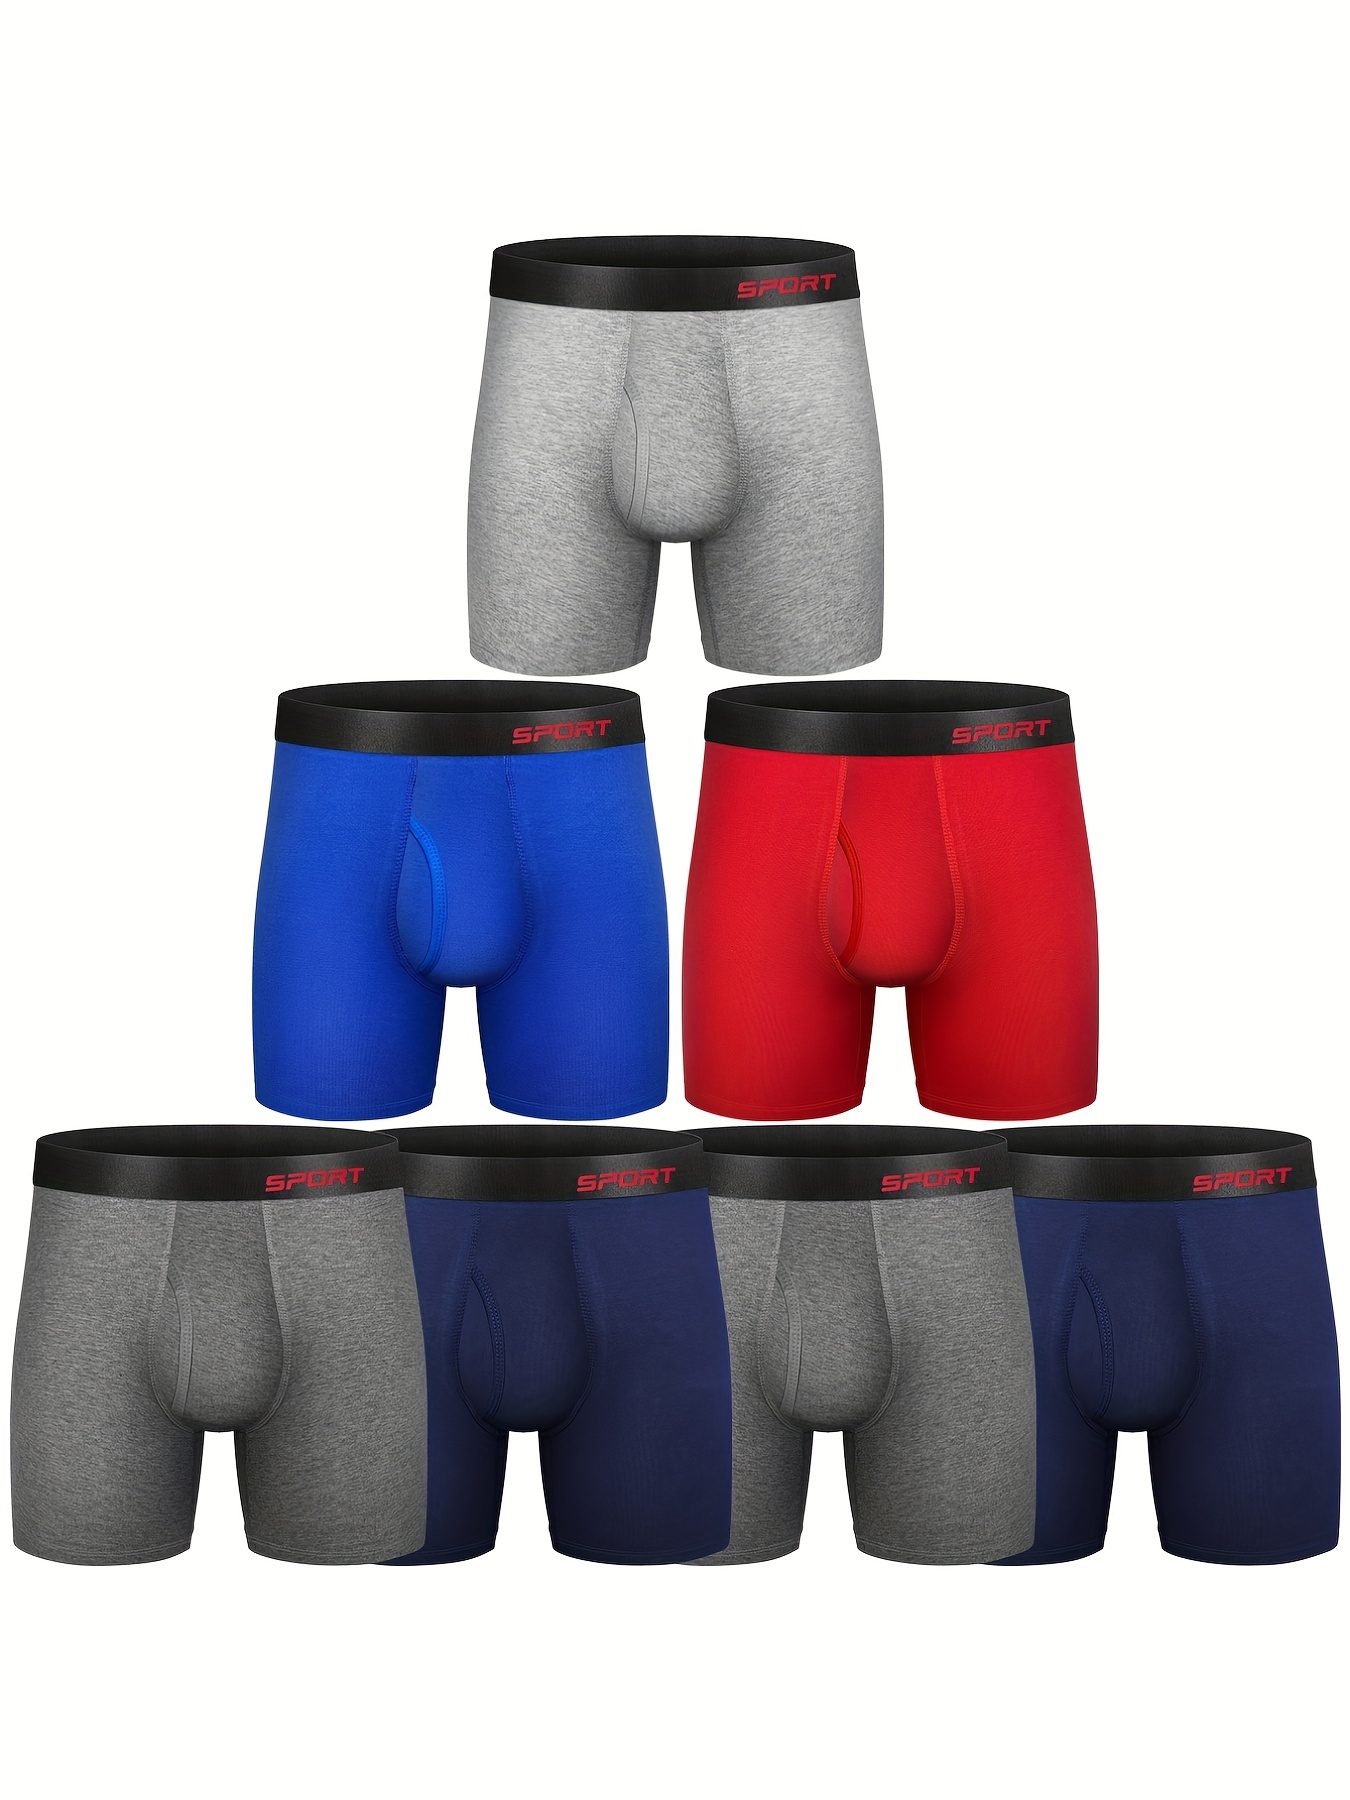 Men's Underwear Comfortable Boxer Briefs Wide Waistband - Temu